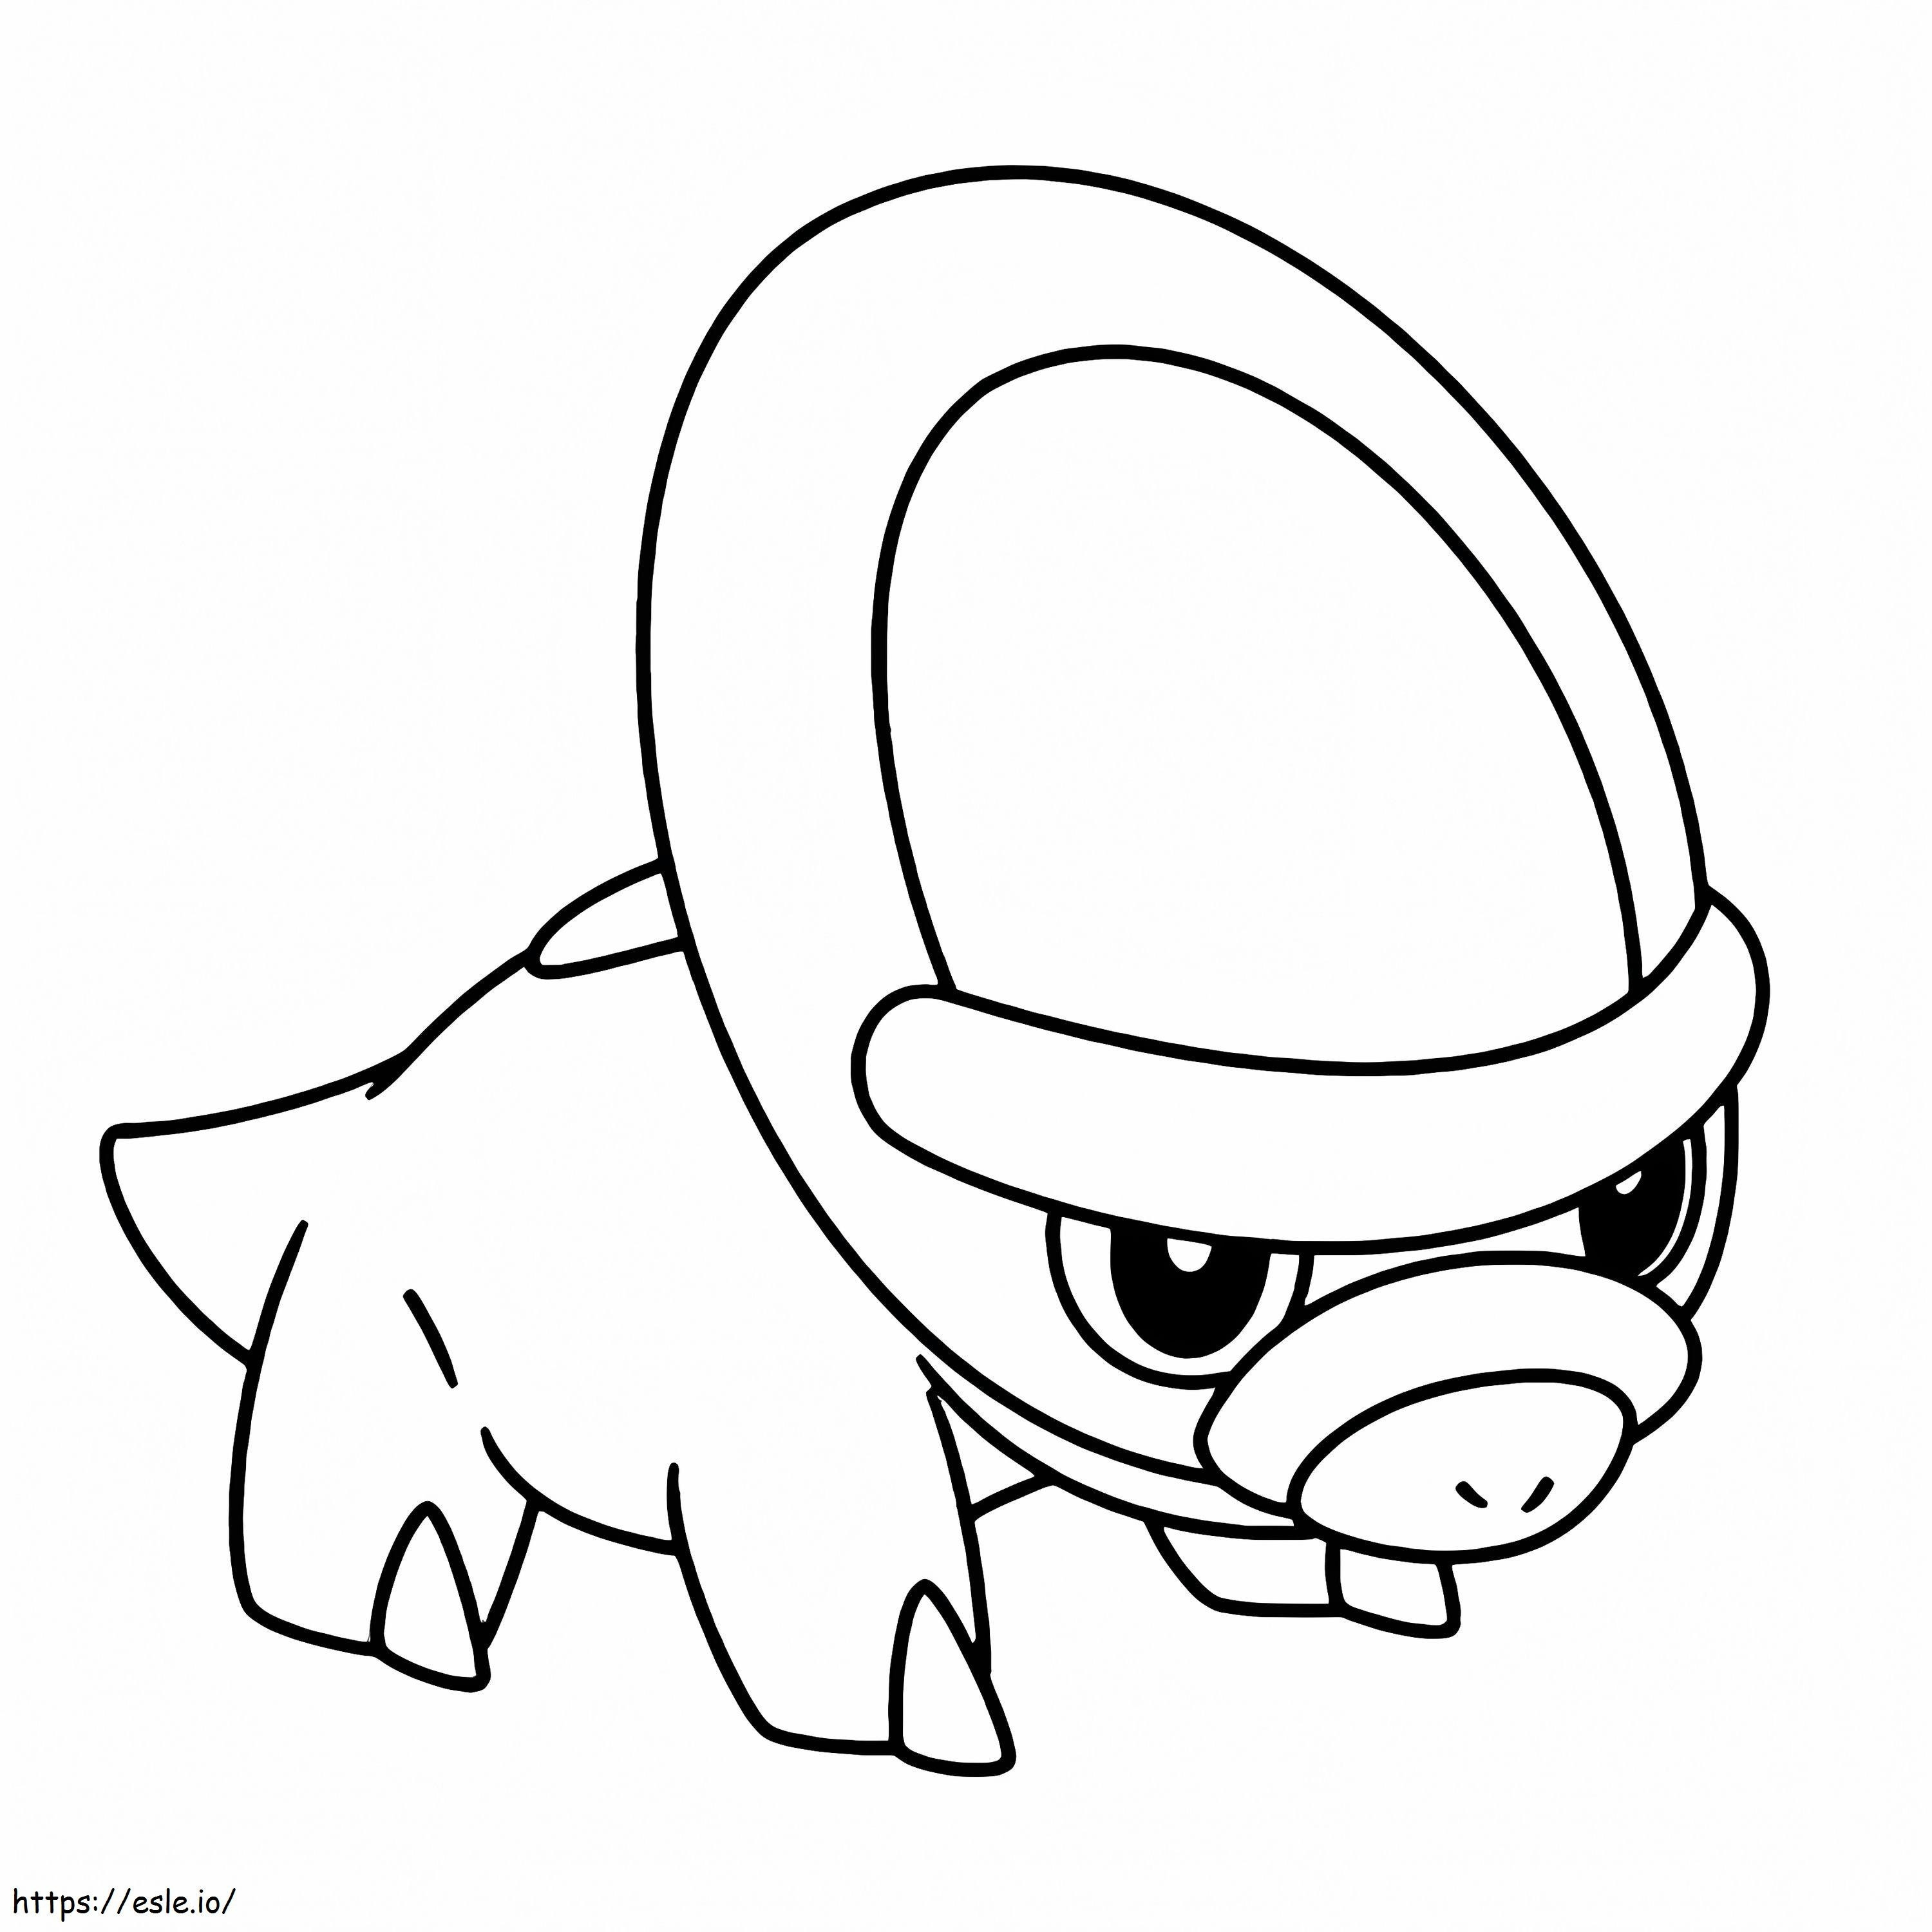 Coloriage Bouclier Pokémon 1 à imprimer dessin